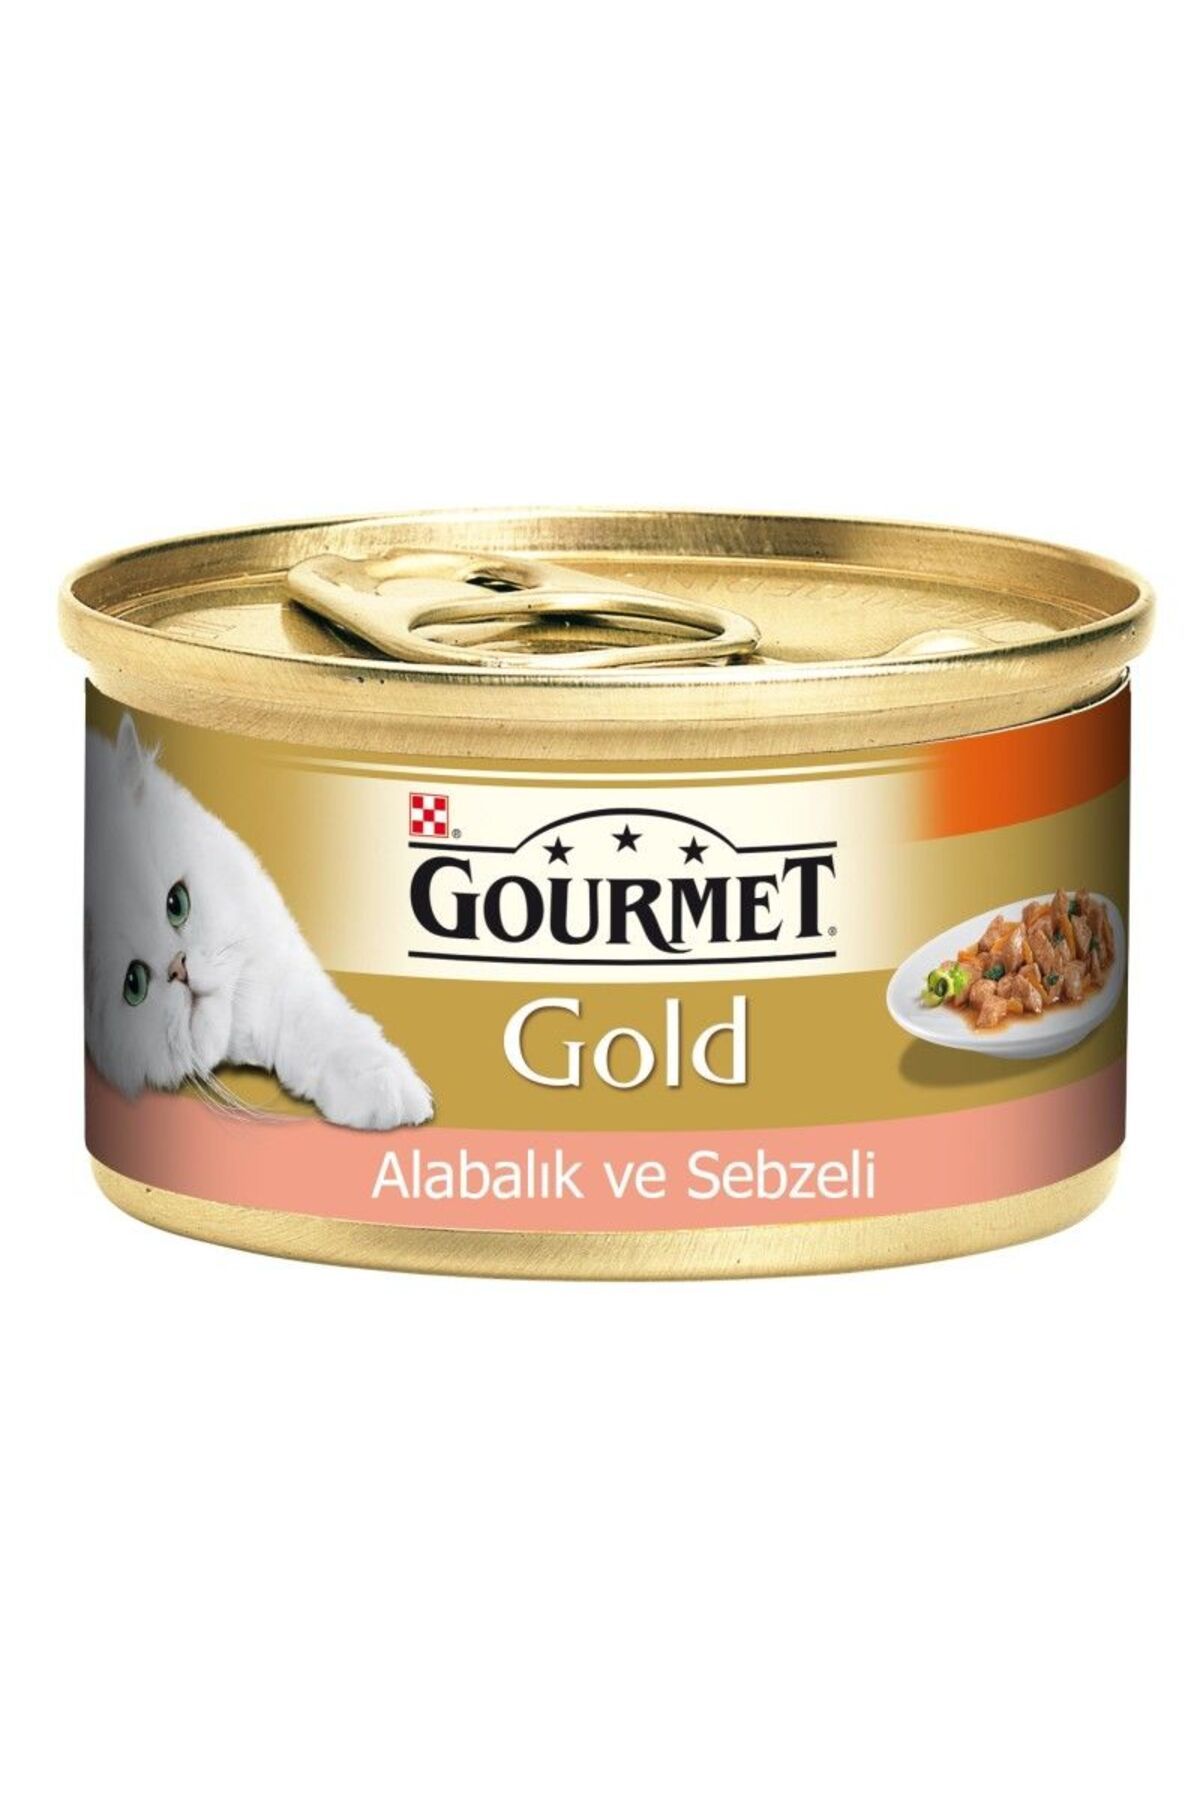 Gourmet Gold Alabalık Ve Sebzeli Yetişkin Kedi Konservesi 85 gr - 12109500